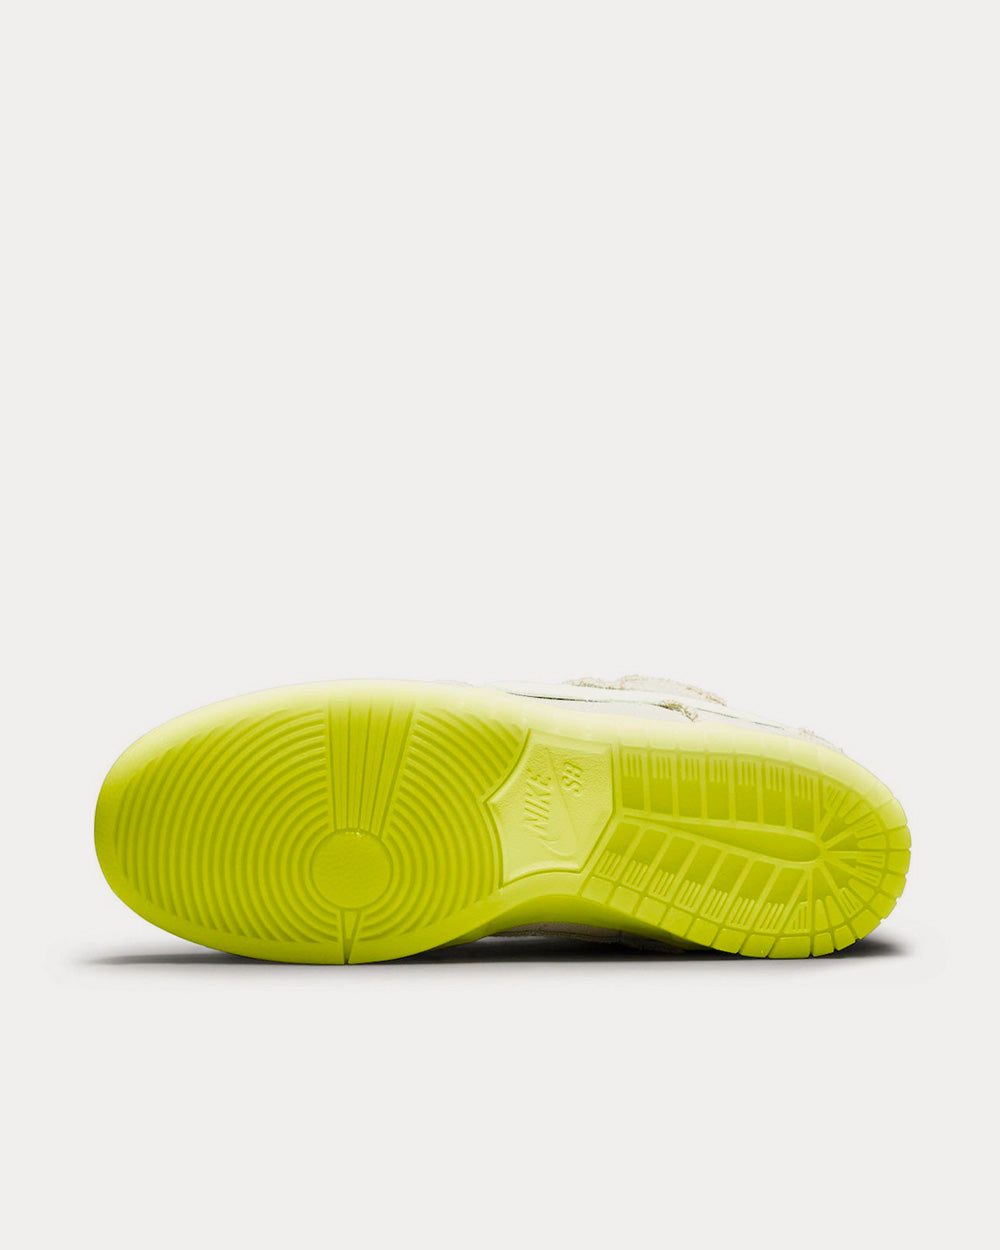 Nike SB Dunk Low 'Mummy' Low Top Sneakers - Sneak in Peace